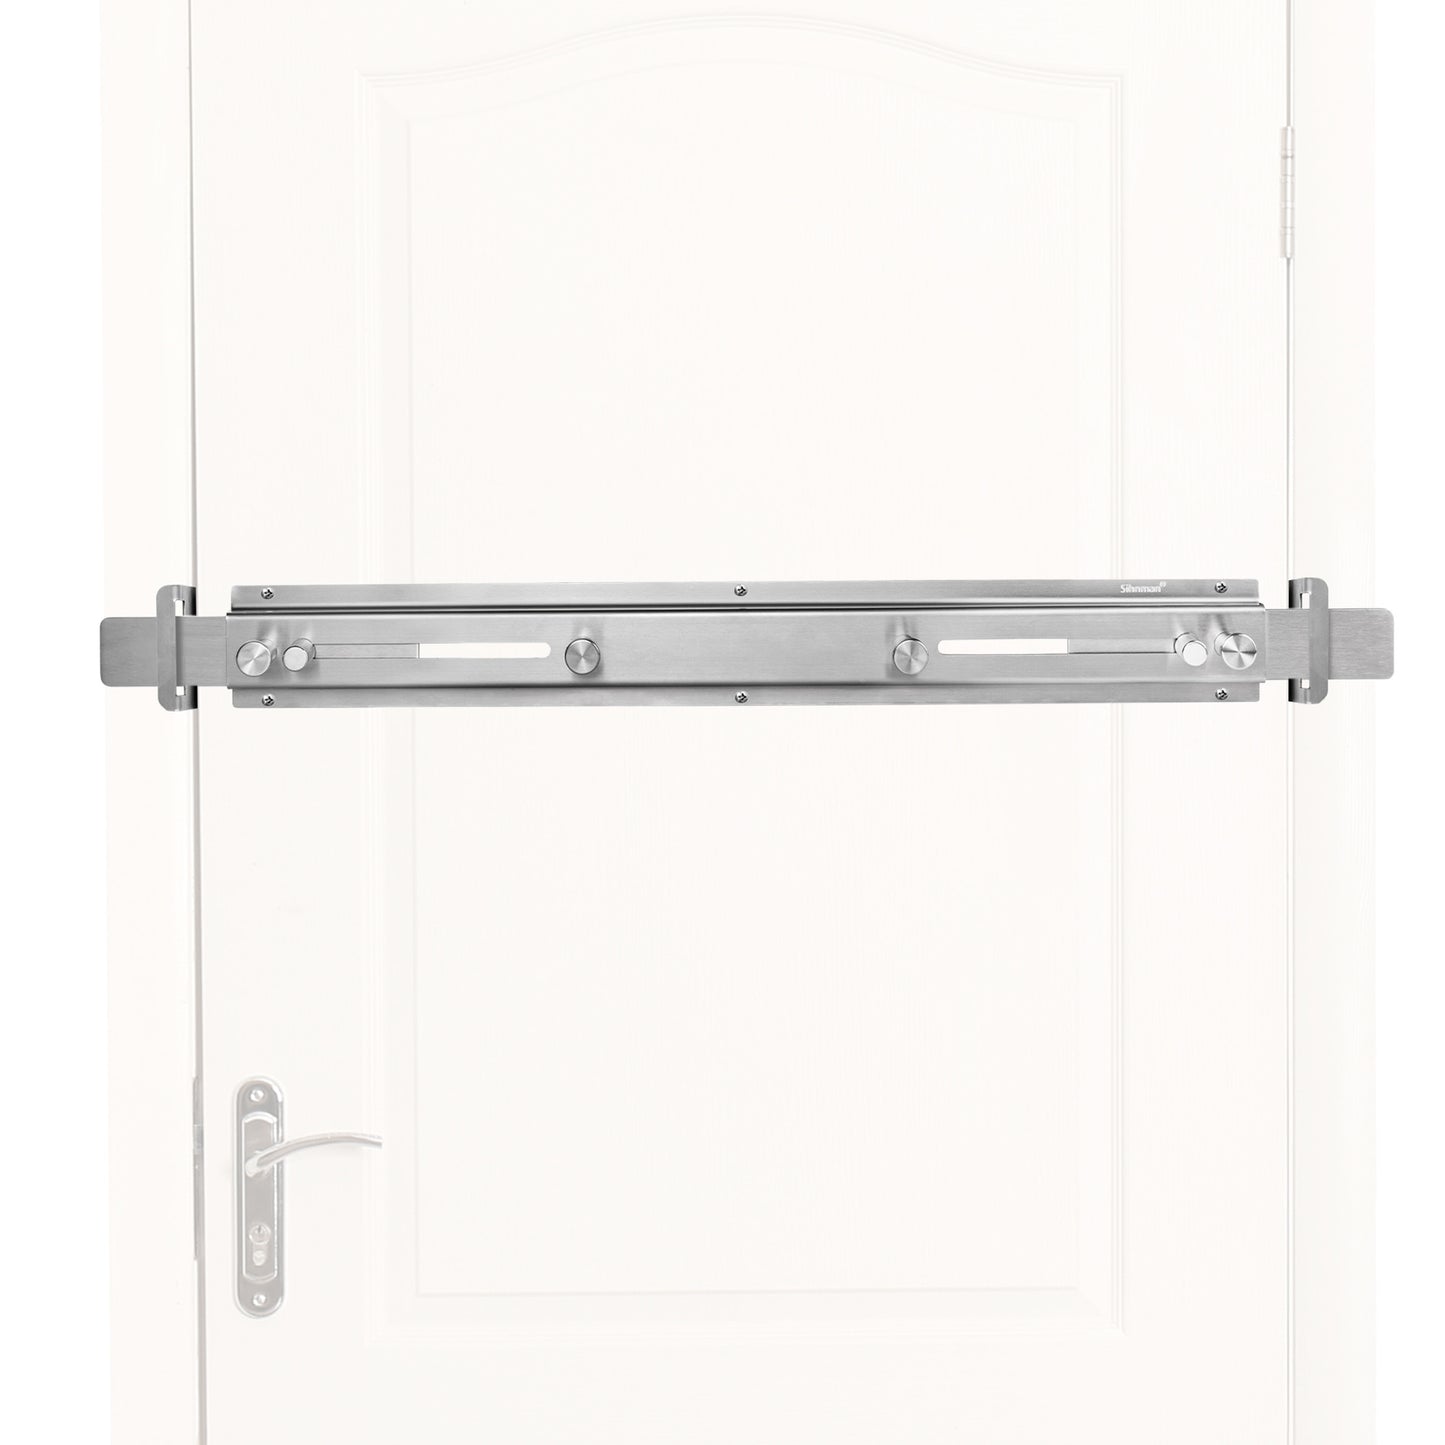 Door Barricade Bar with Door Hook Door Hanger (Stainless Steel) for Door Security Reinforcement and Home Protection. Stop House Intruder and Childproof.